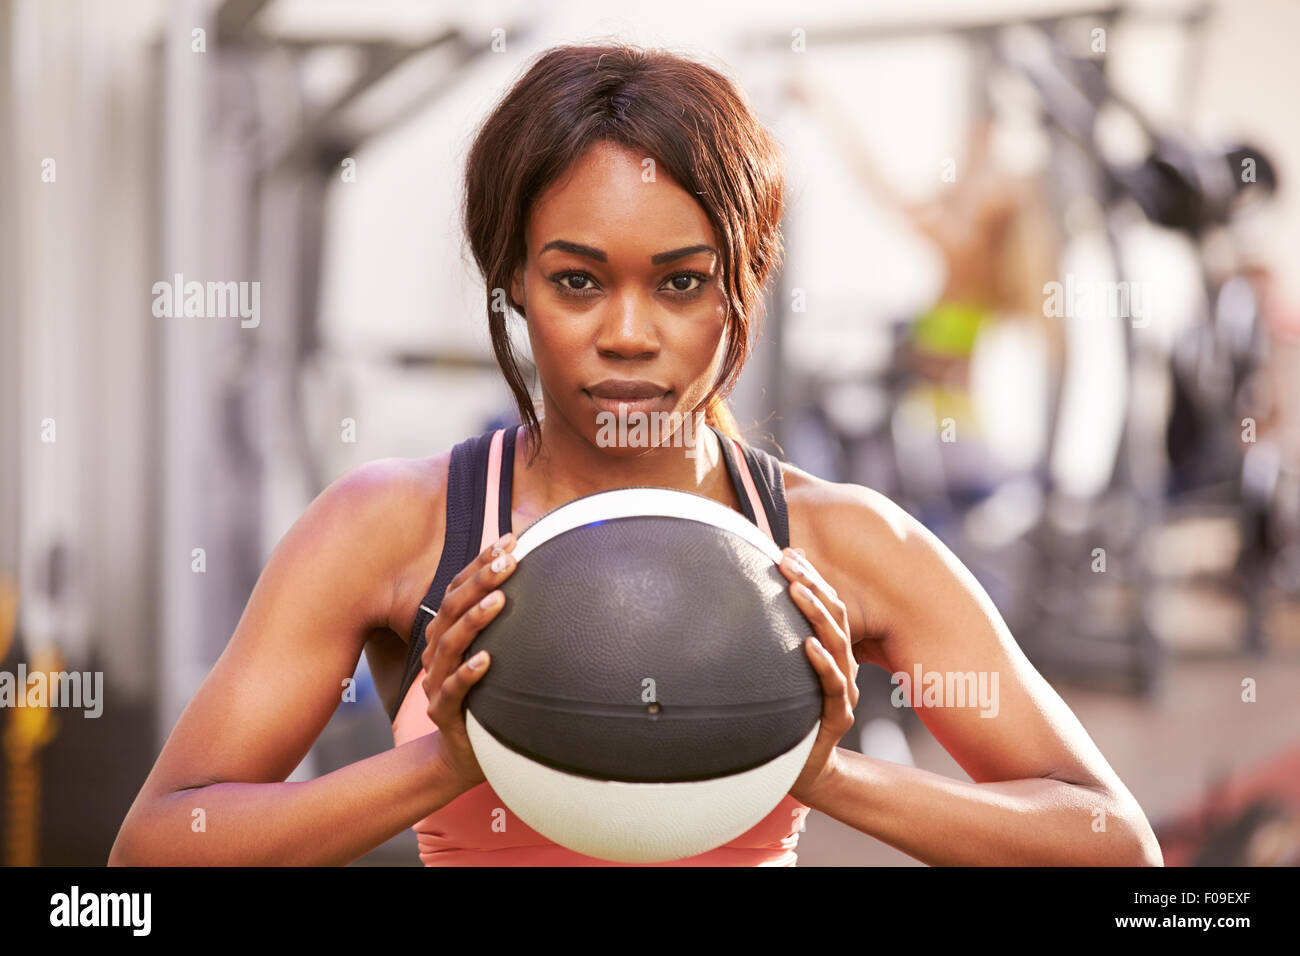 Porträt einer Frau mit einem Medizinball in einem Fitnessstudio Stockfoto